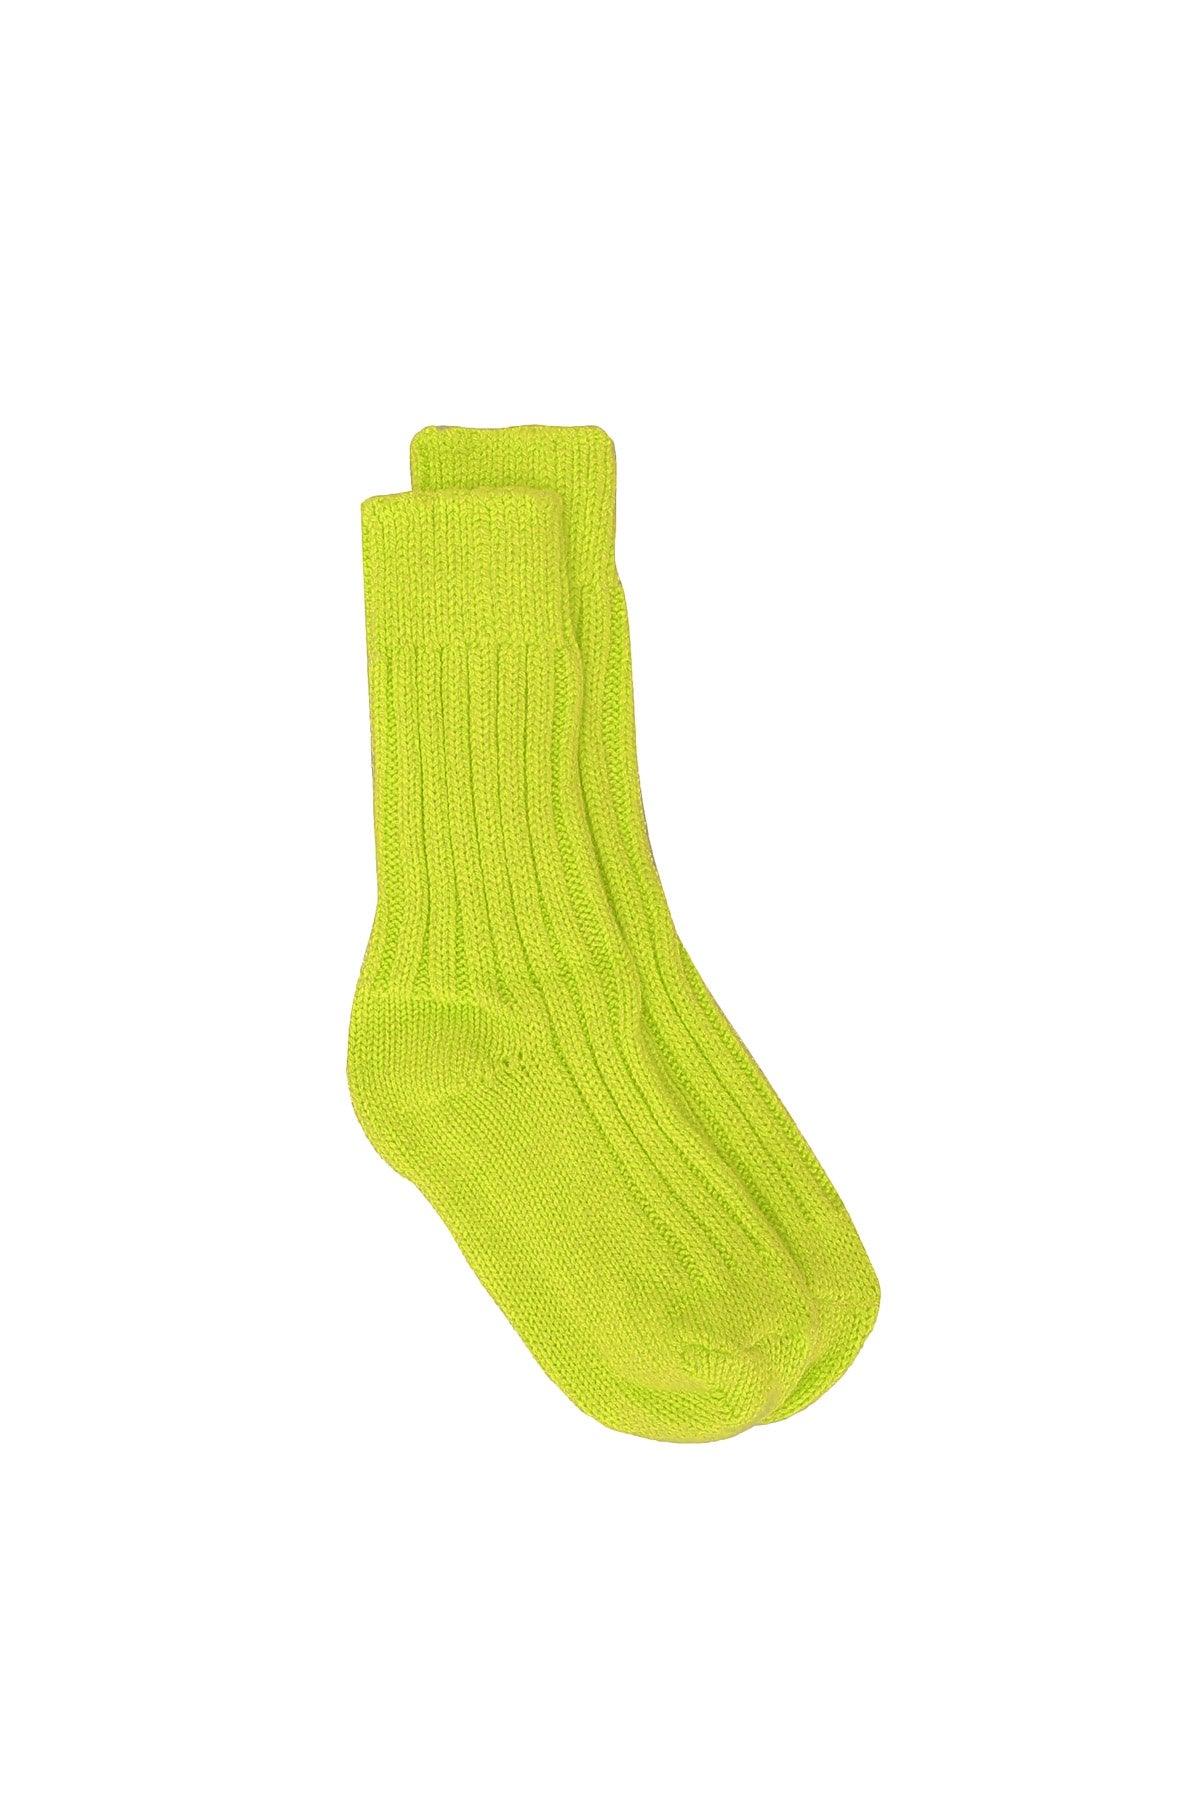 Yosemite Socks - Neon Yellow